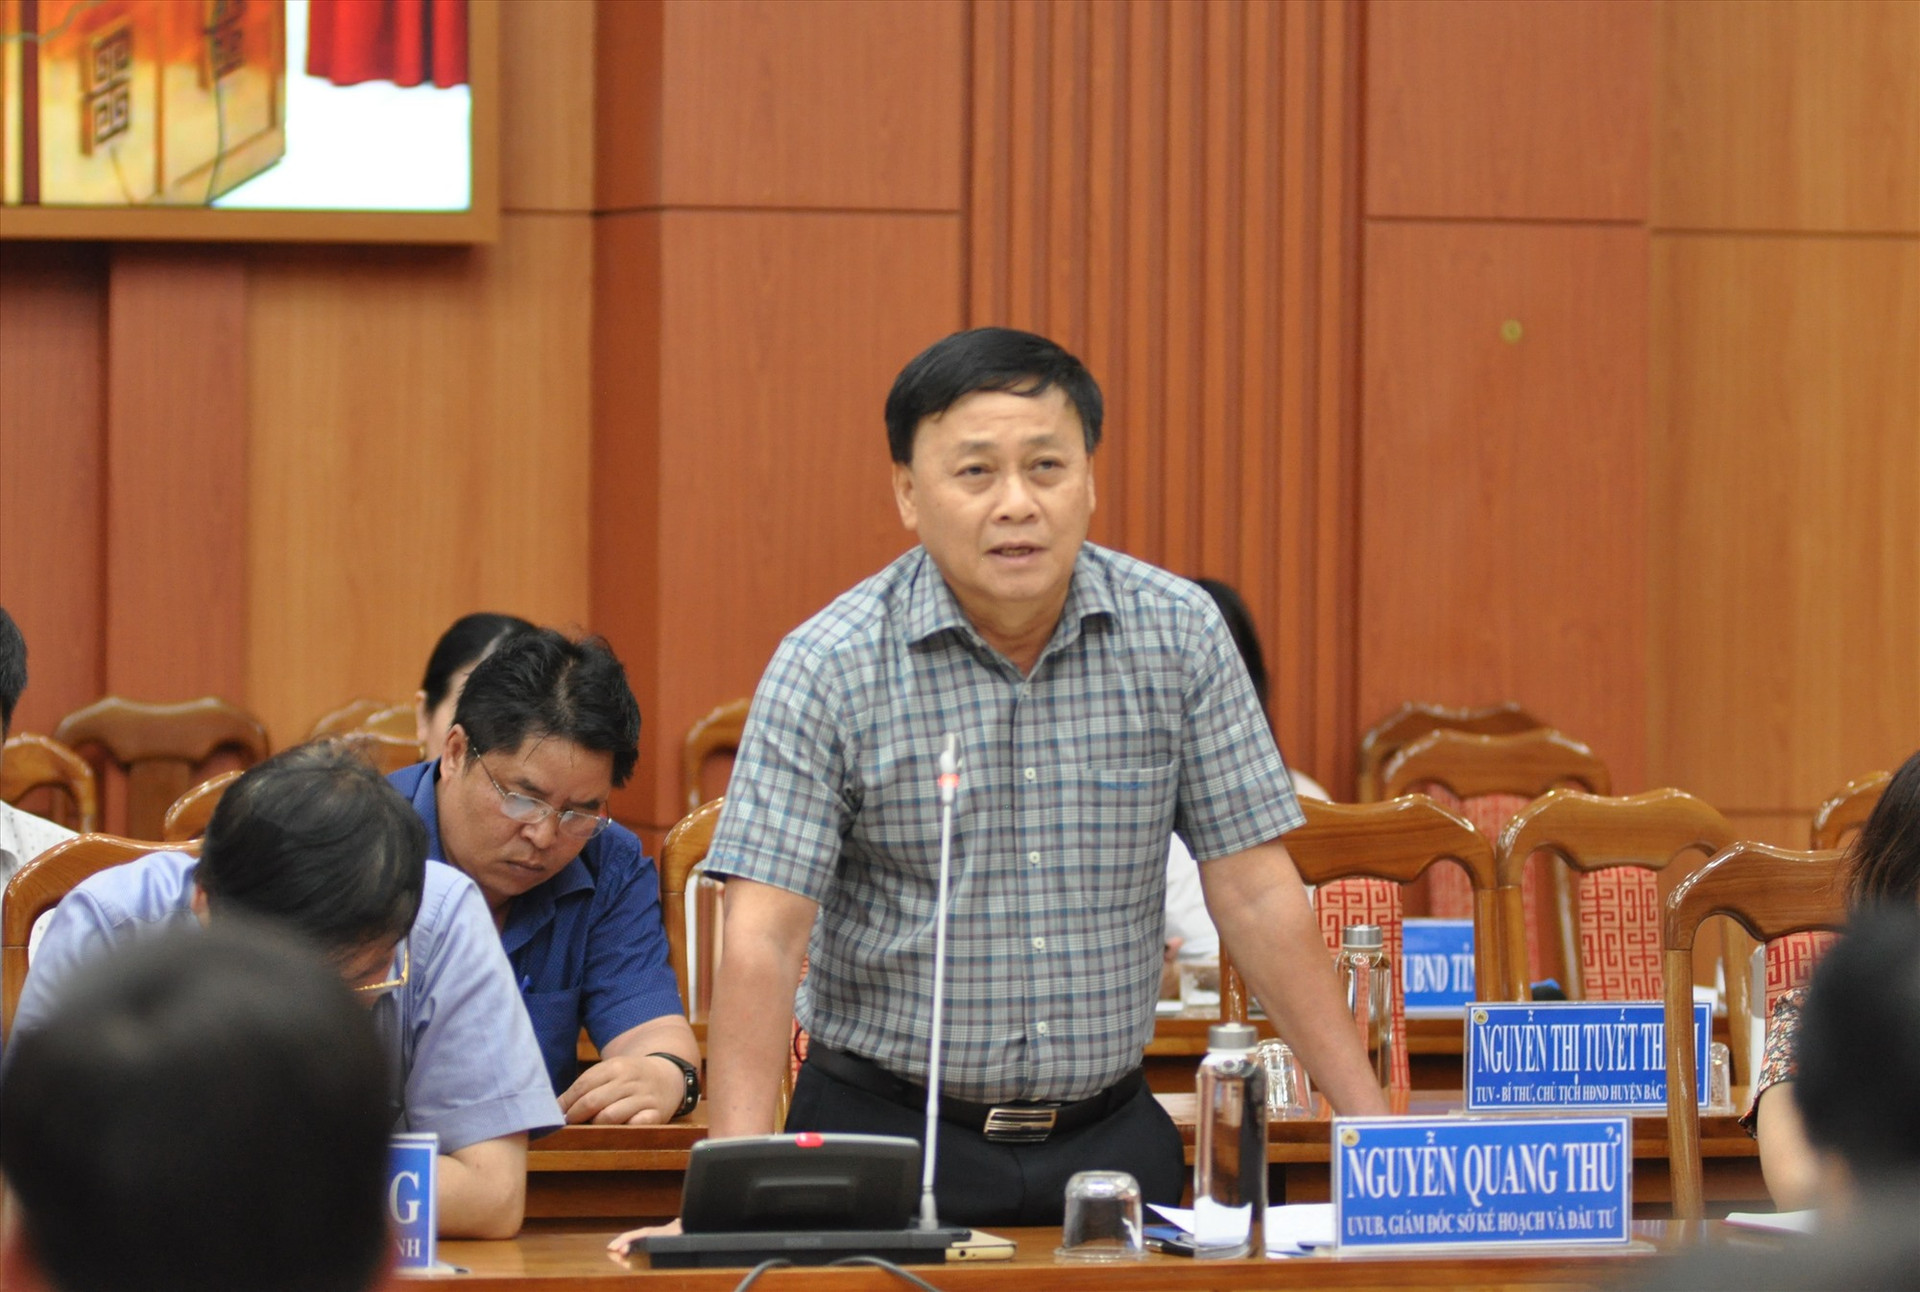 Ông Nguyễn Quang Thử - Giám  đốc Sở Kế hoạch đầu tư cho rằng cần có chính sách hỗ trợ doanh nghiệp. Ảnh: X.P